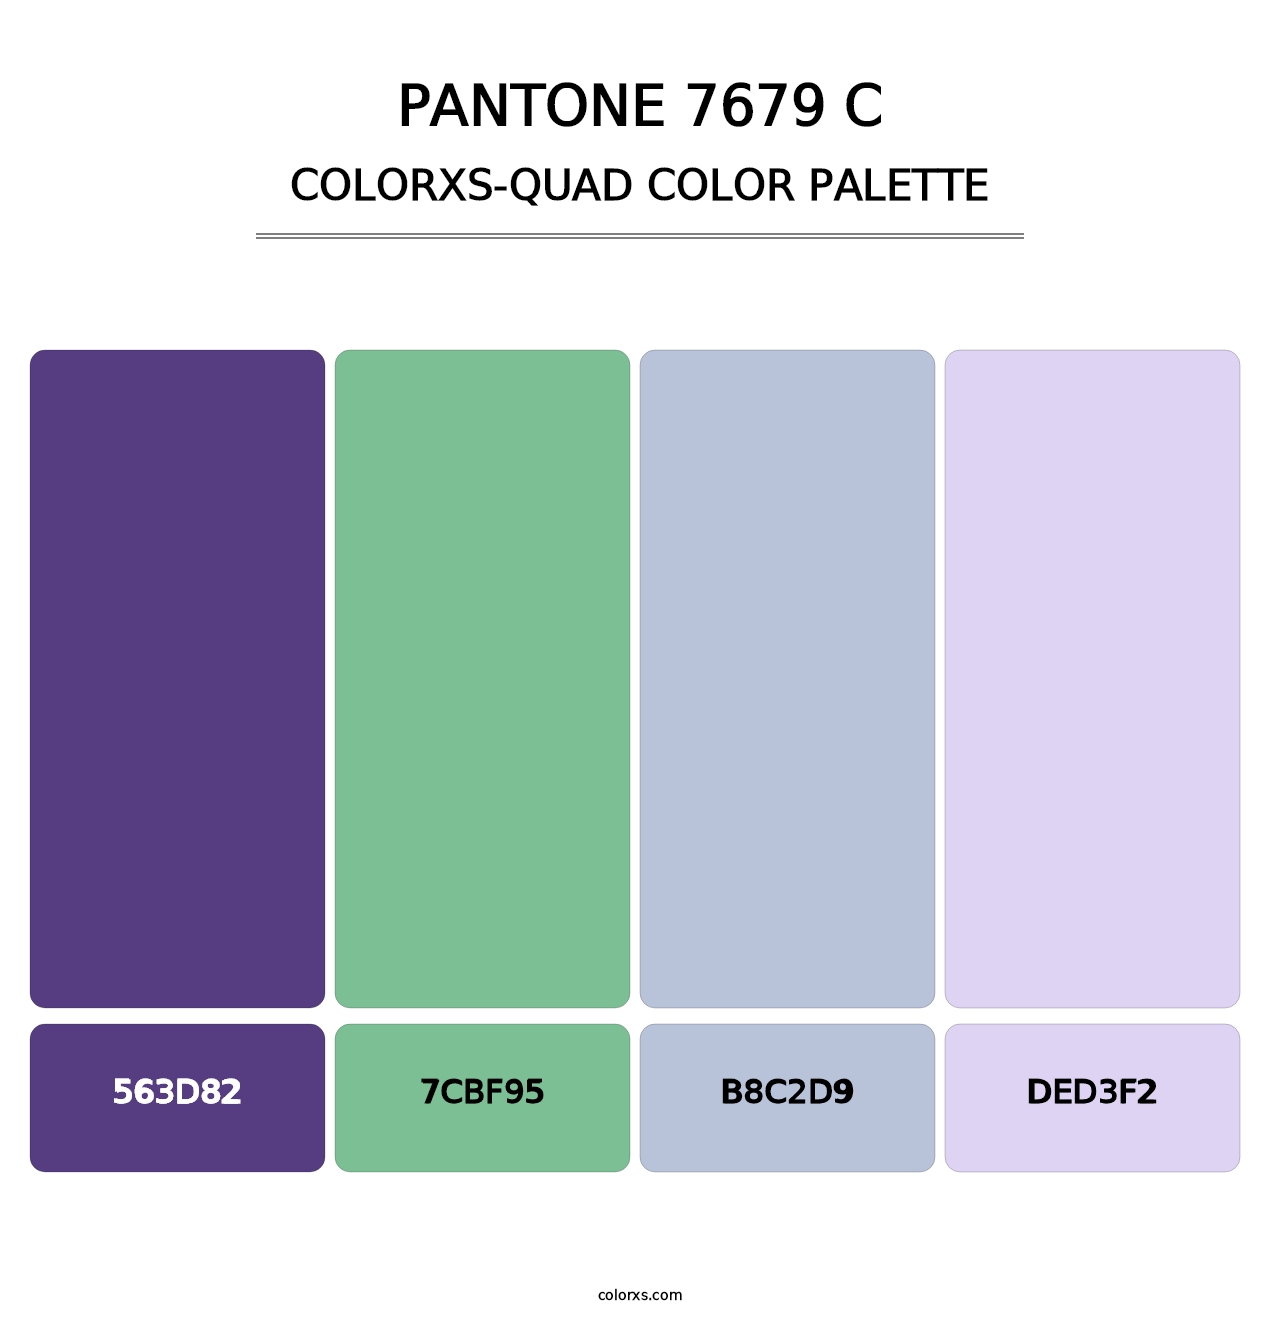 PANTONE 7679 C - Colorxs Quad Palette